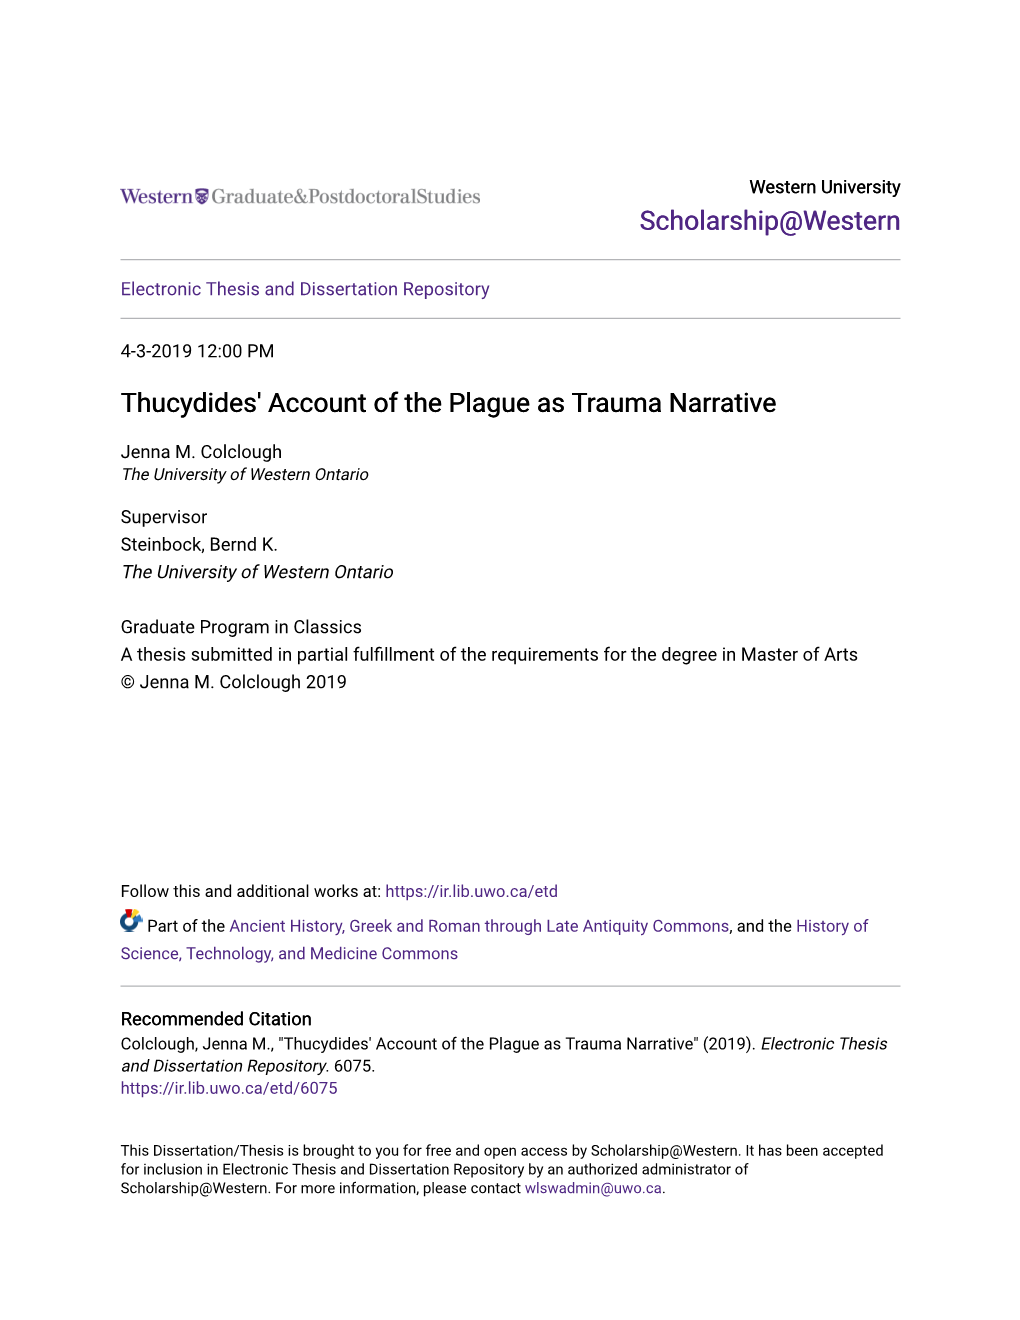 Thucydides' Account of the Plague As Trauma Narrative